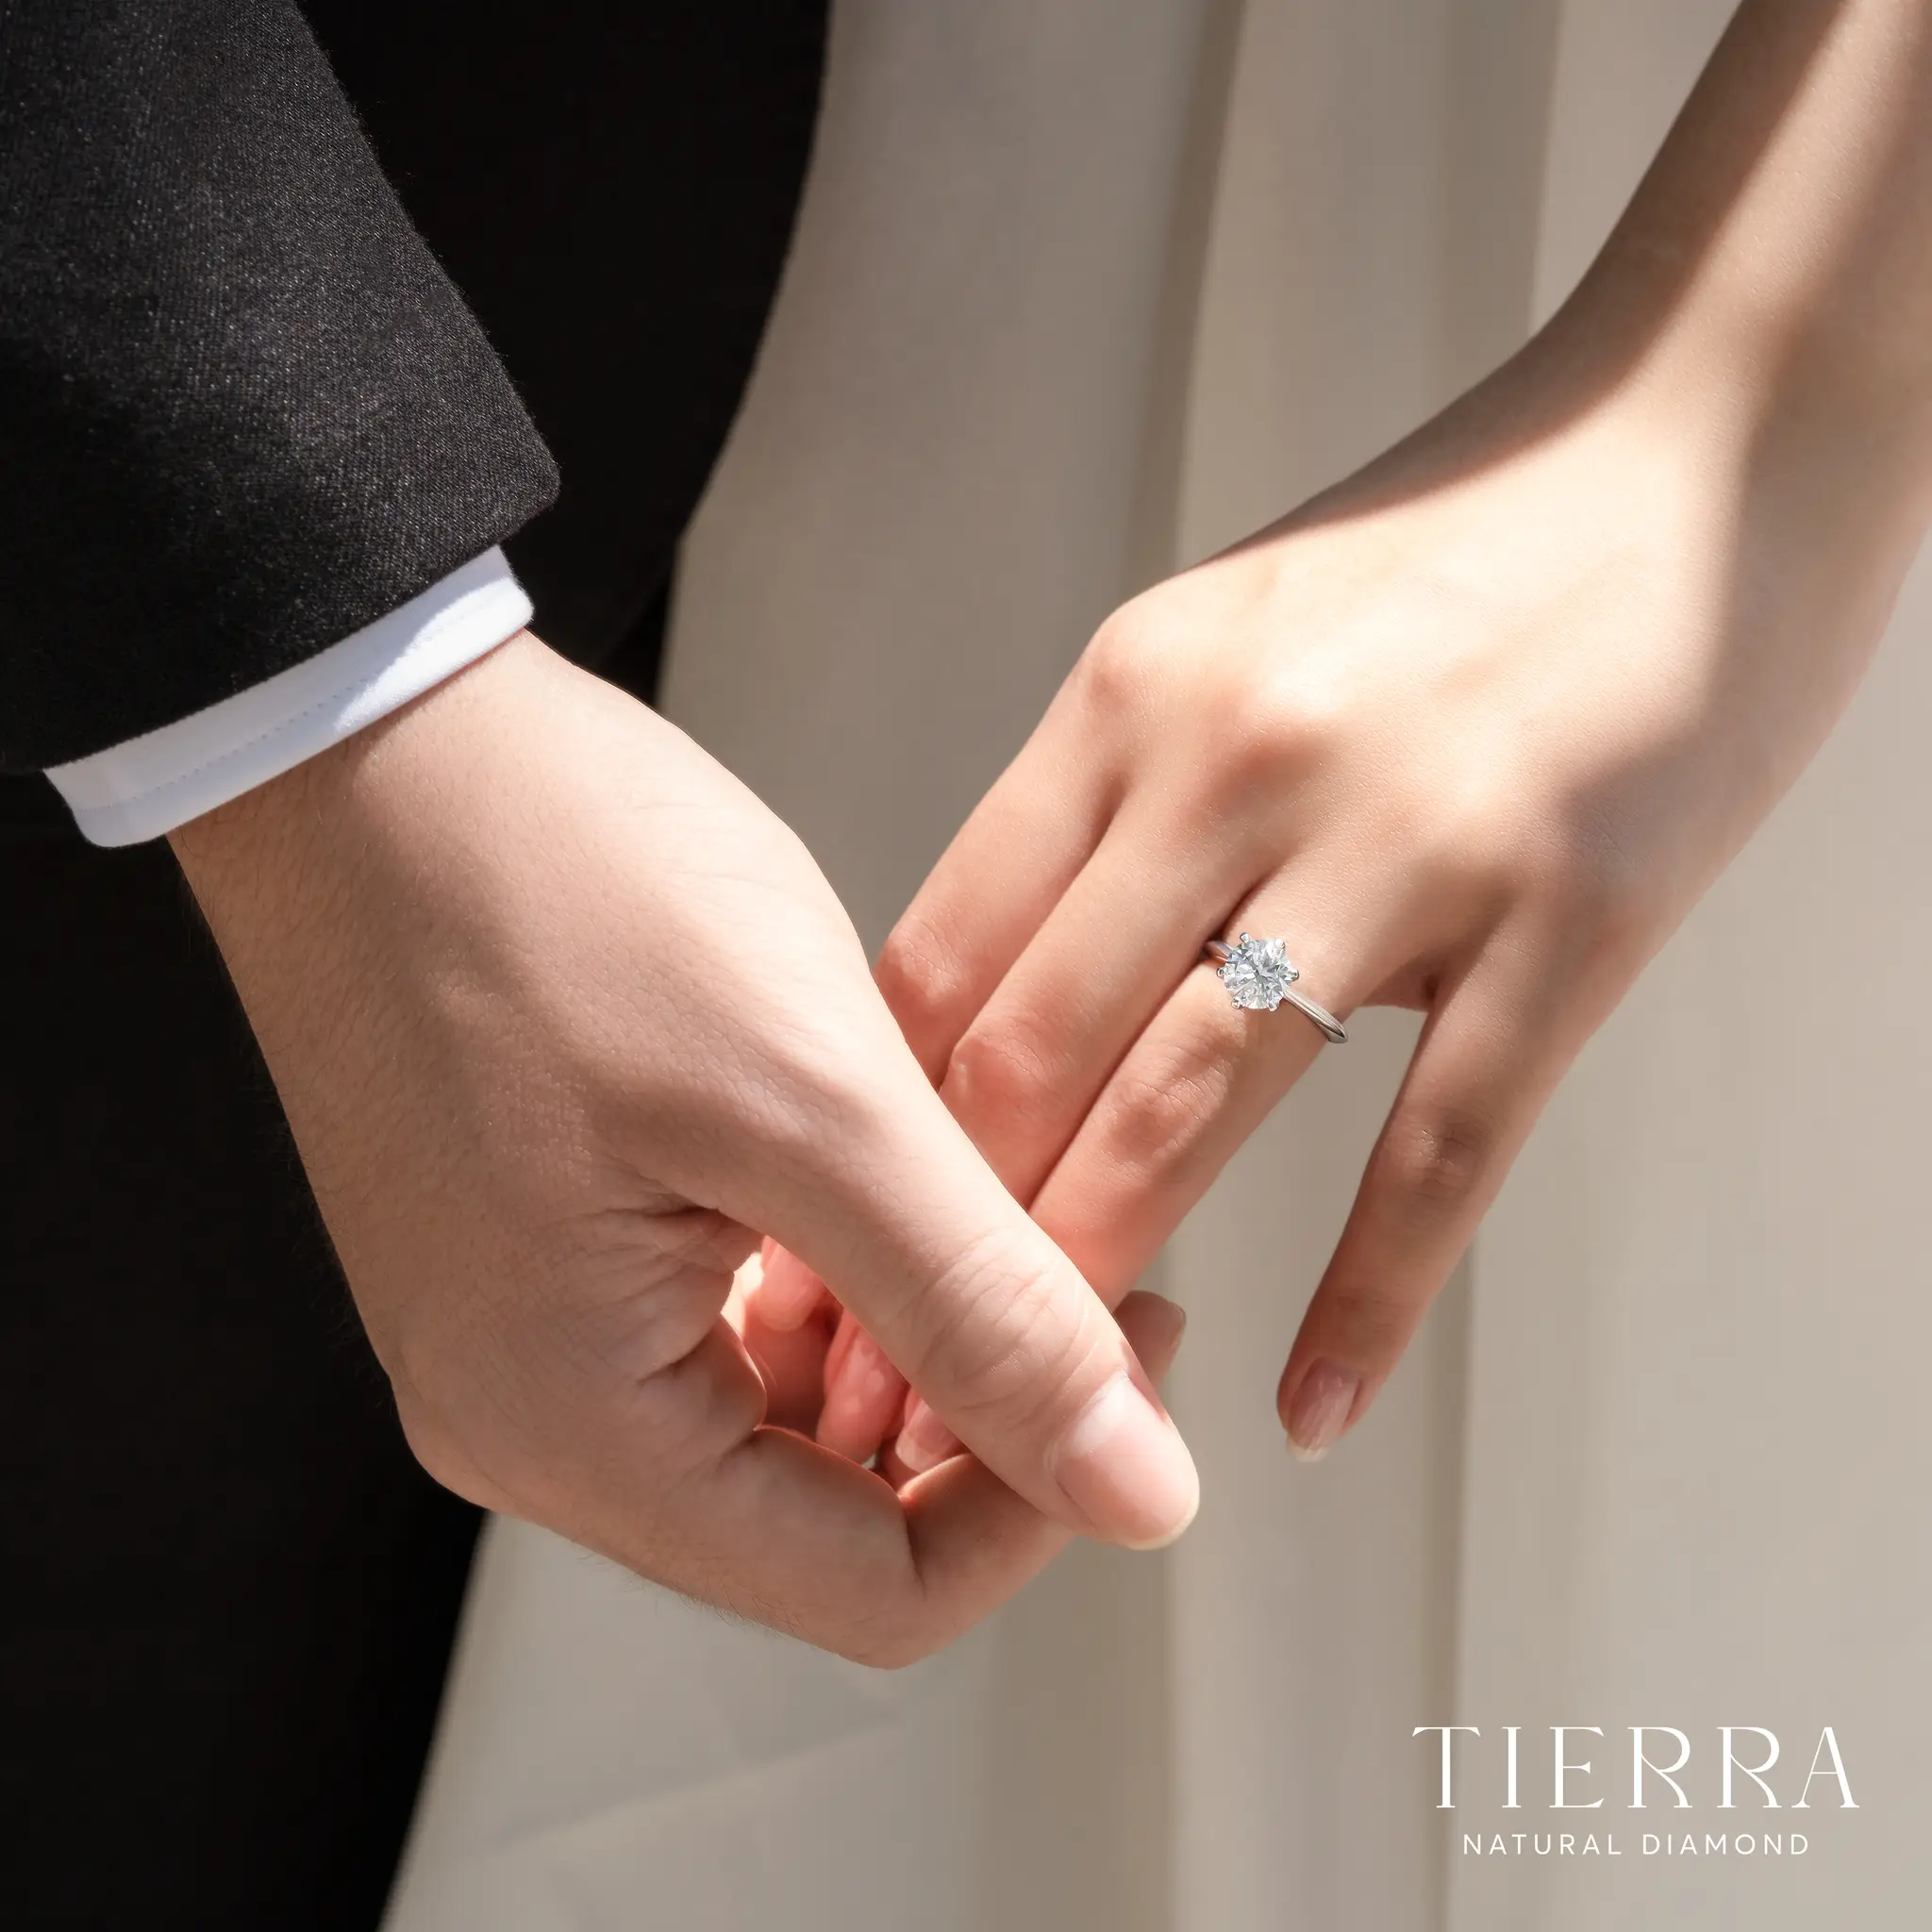 Tierra Diamond - Khám phá địa chỉ mua nhẫn cưới, nhẫn cầu hôn được cặp đôi trẻ ưa chuộng - Hình 1 .webp